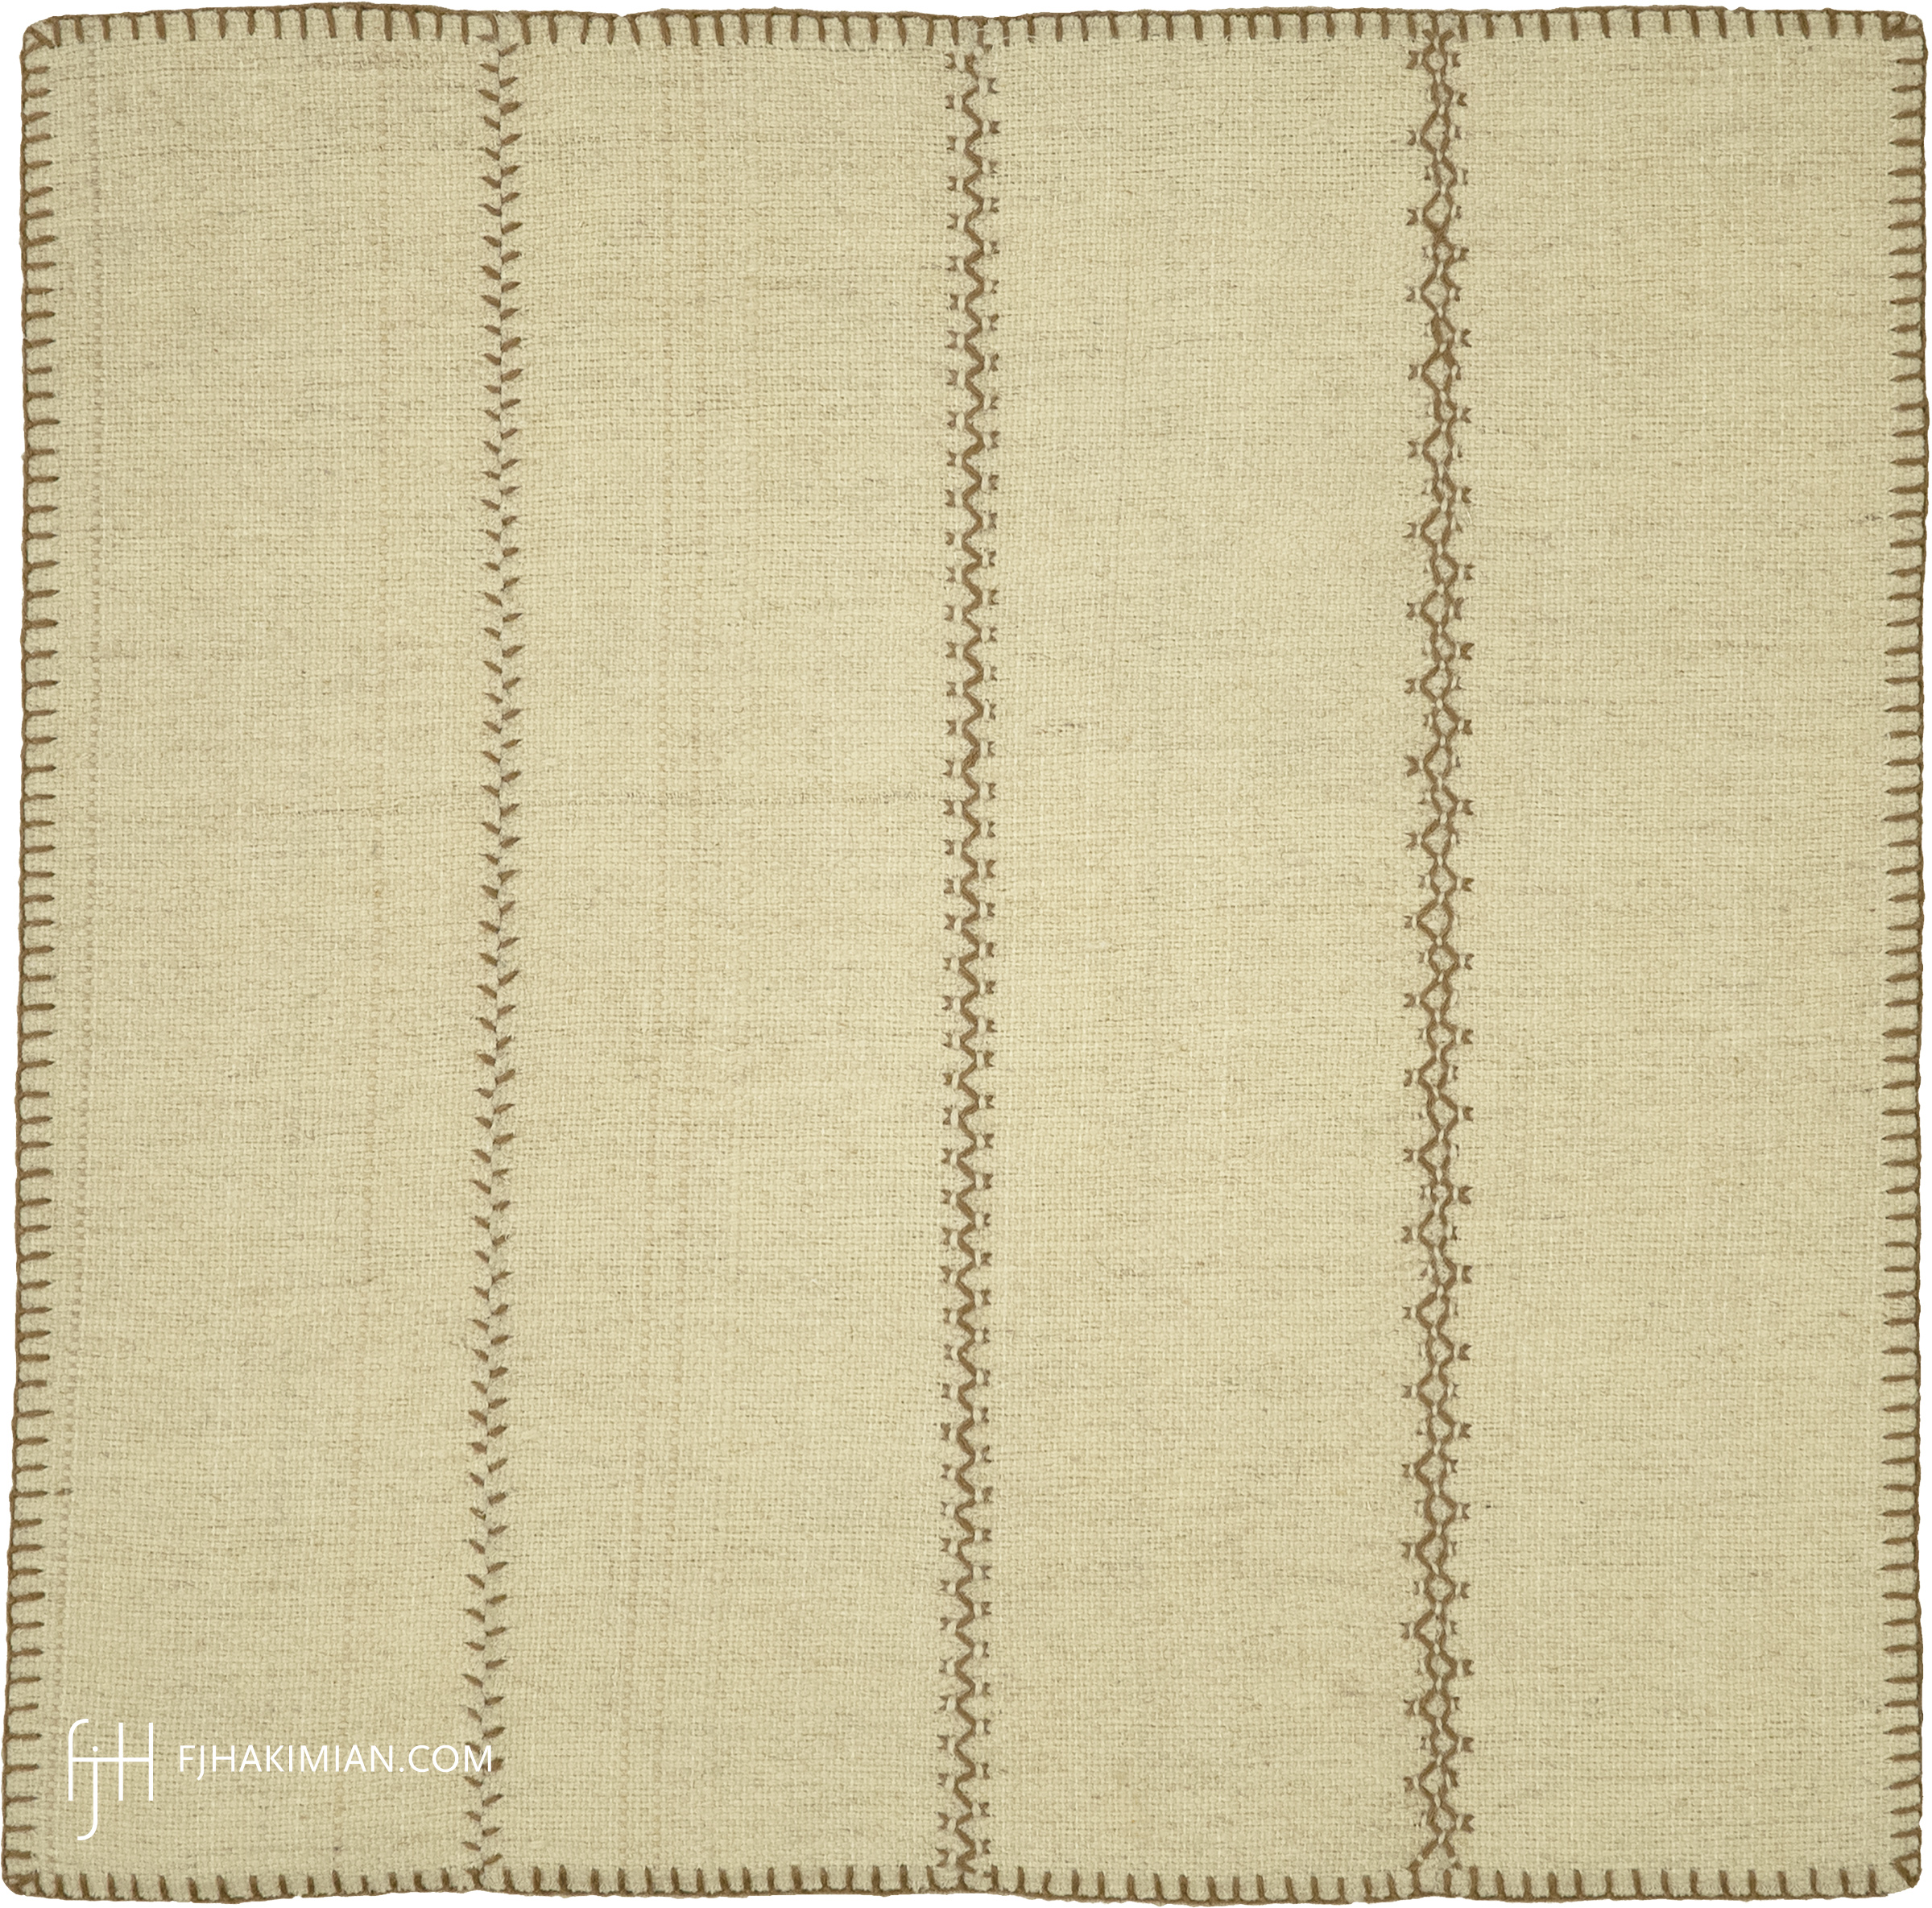 FJ Hakimian | 37581 | Custom Carpet